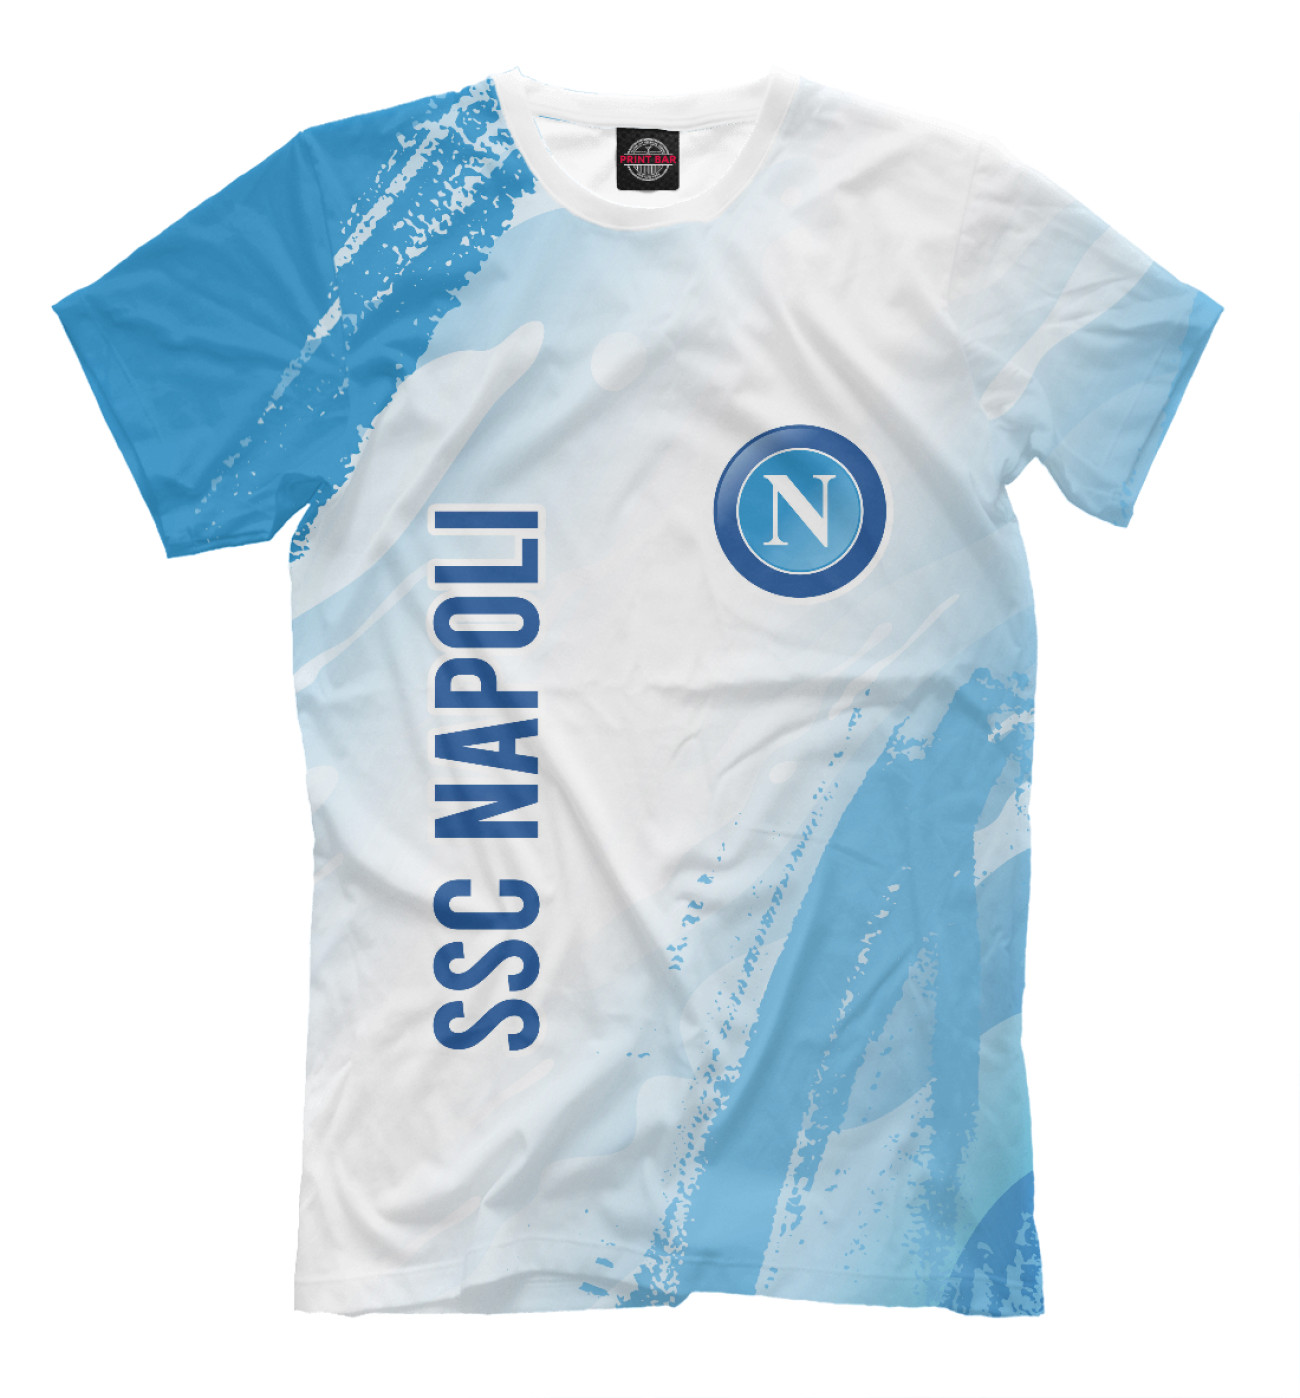 Мужская Футболка SSC Napoli / Наполи, артикул: NPL-760105-fut-2